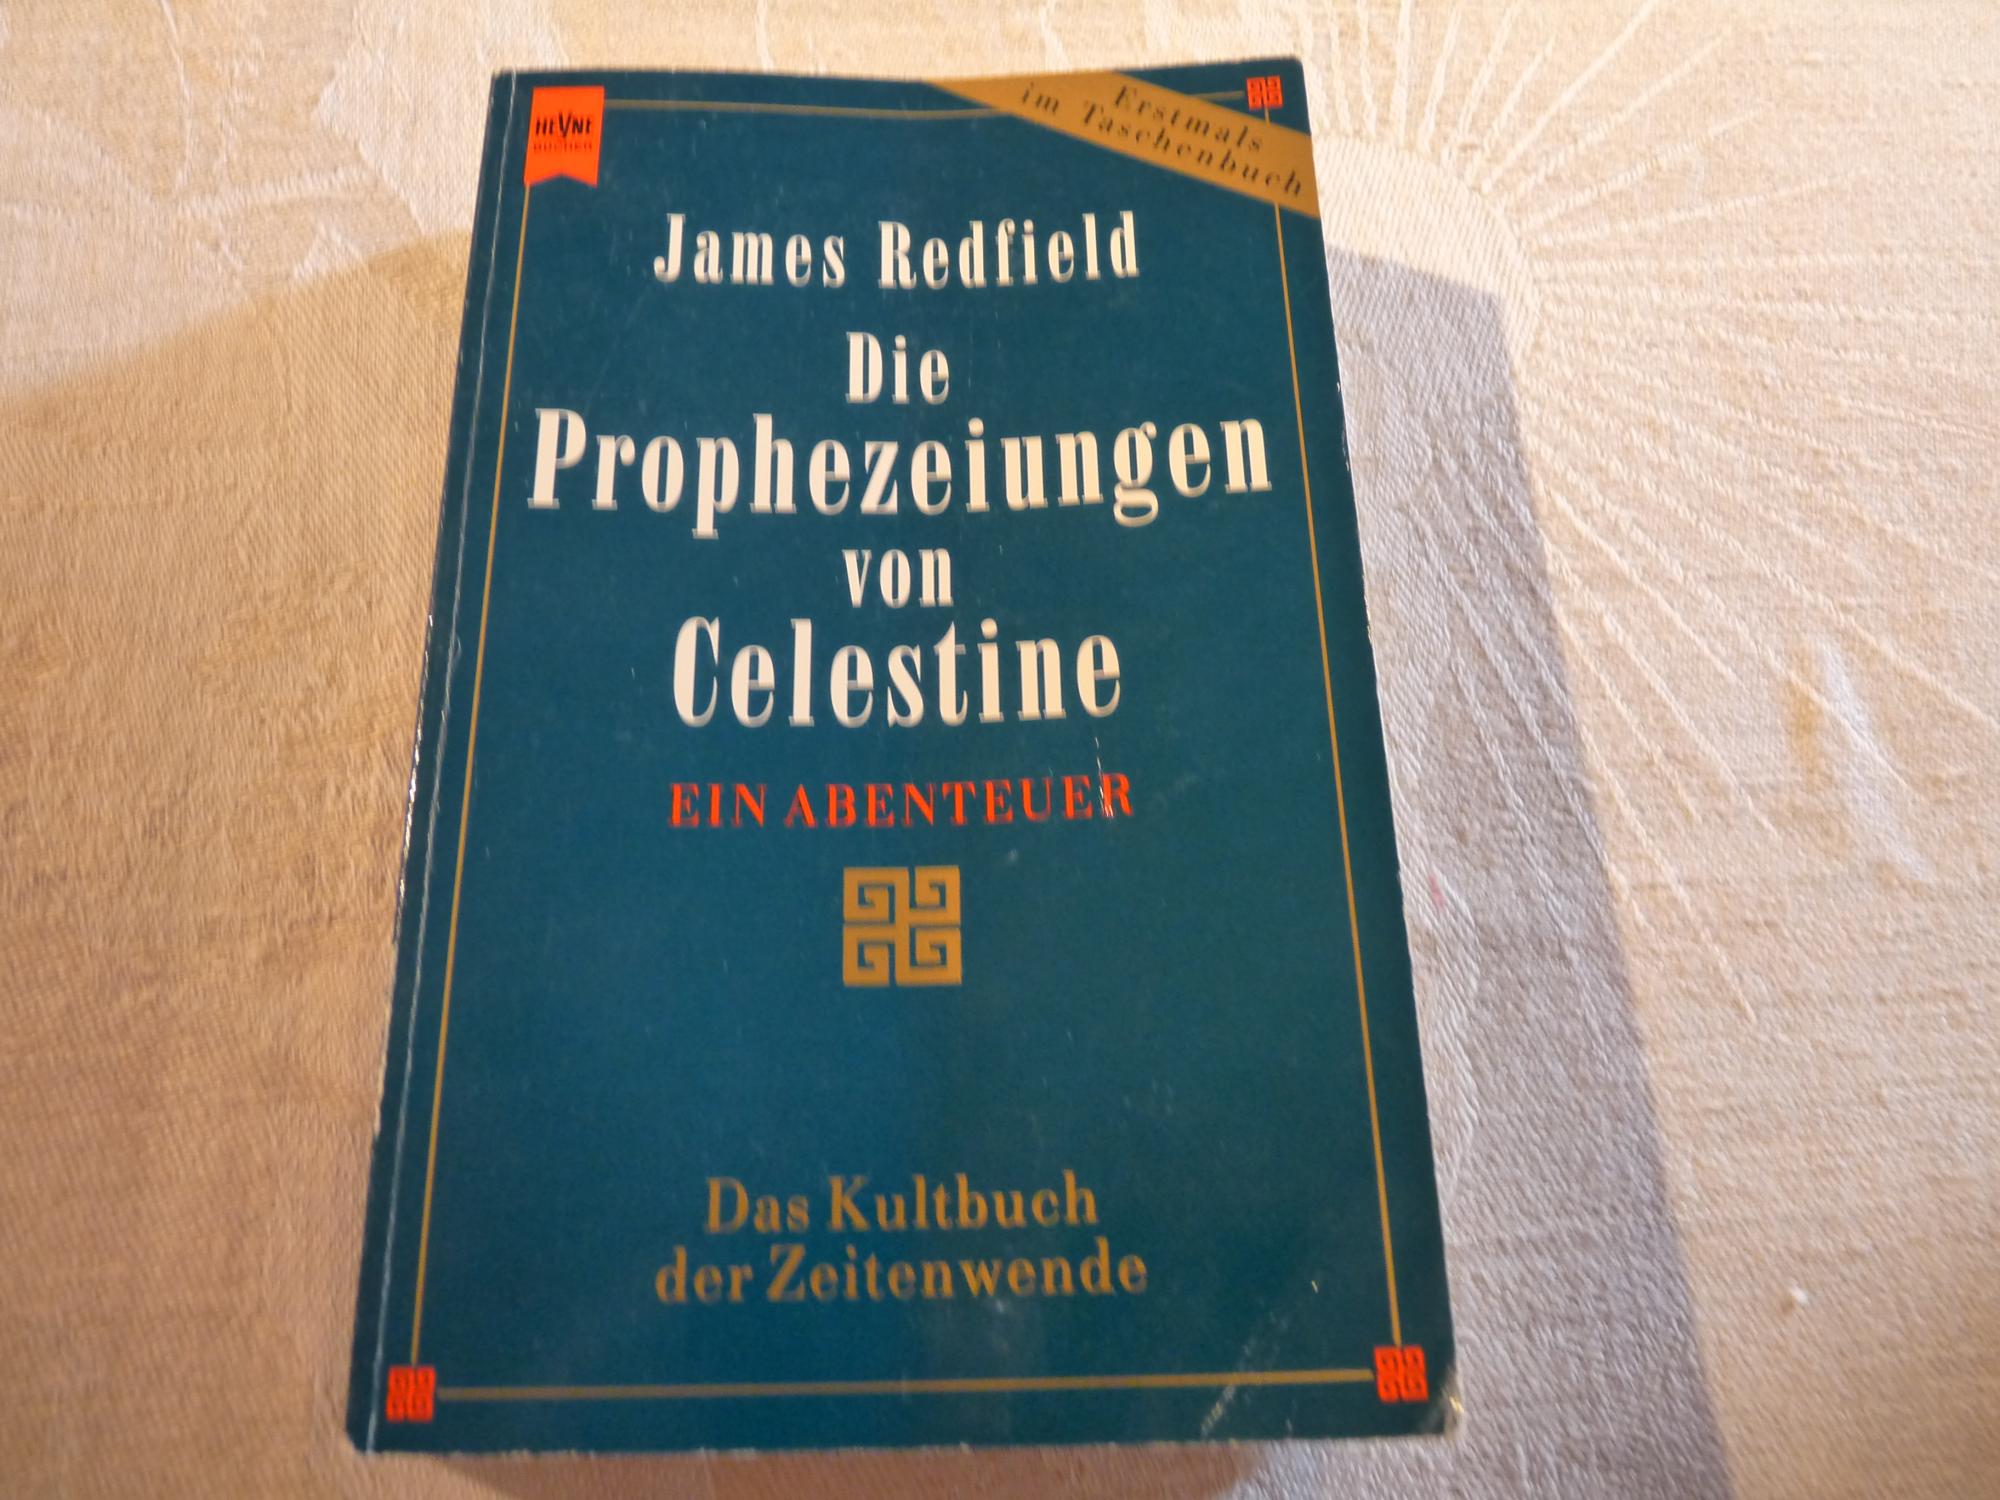 Die Prophezeiungen von Celestine - Ein Abenteuer - Das Kultbuch der Zeitenwende - James Redfield